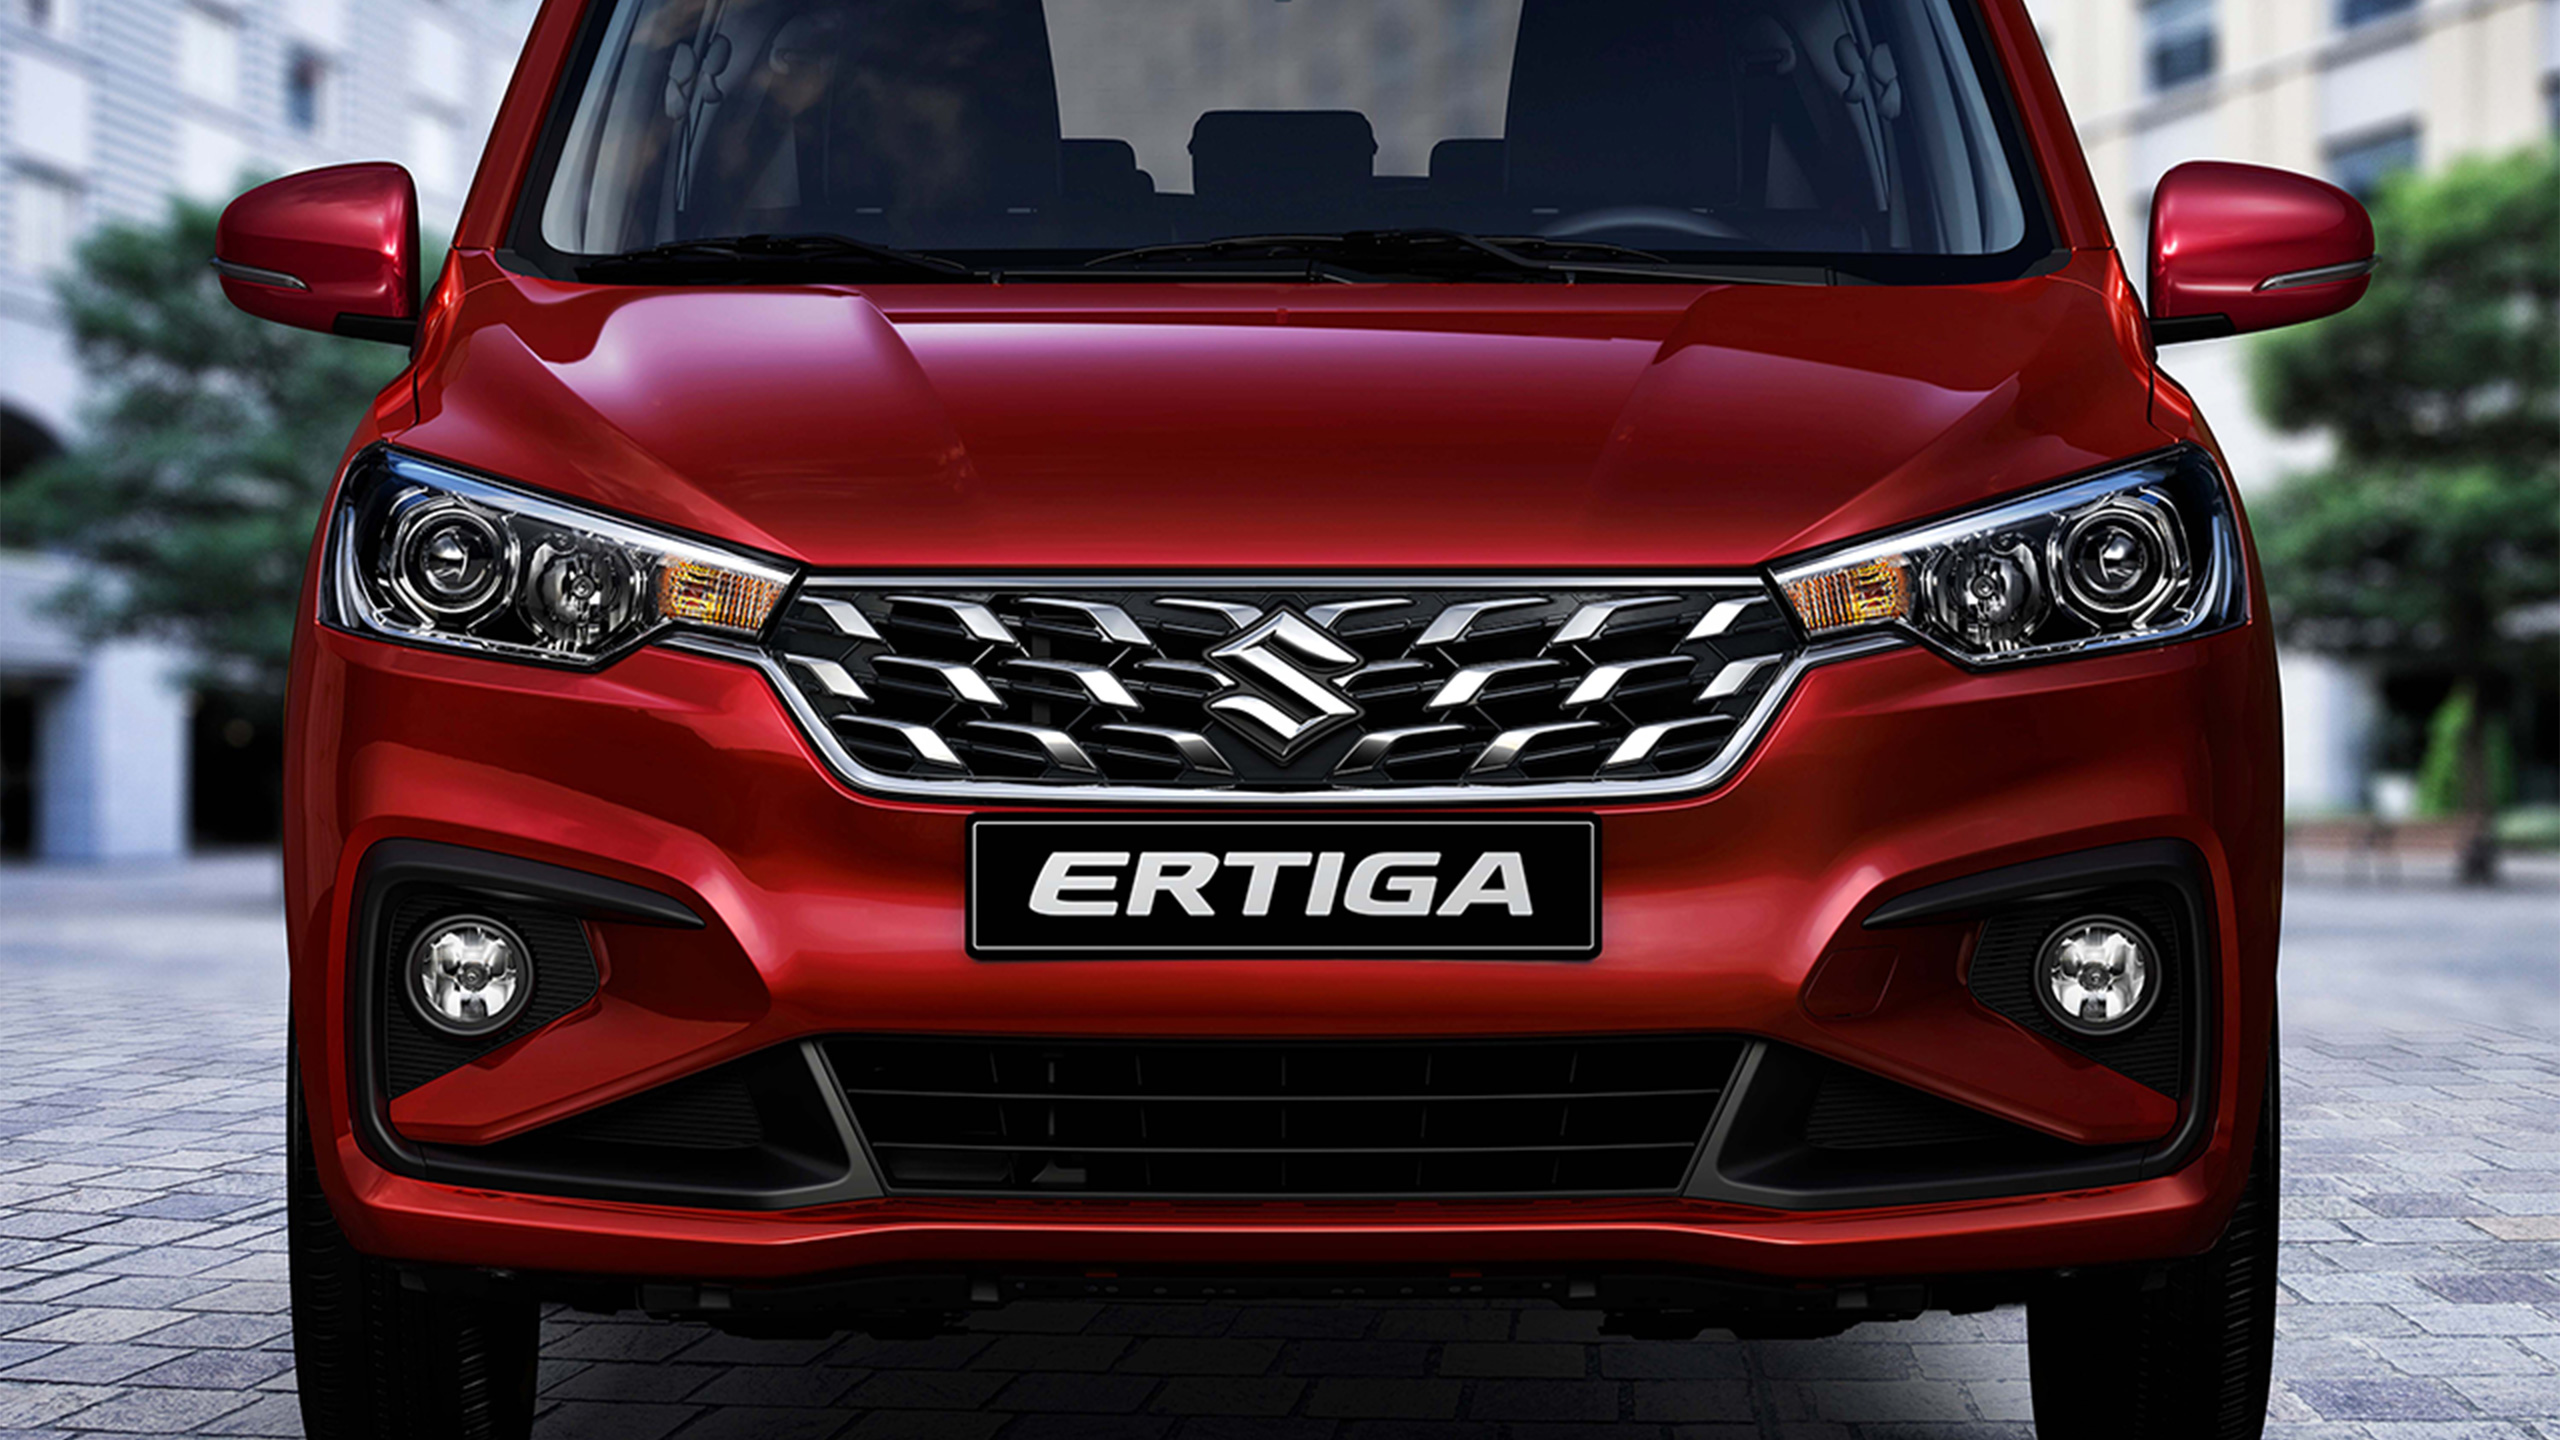 Front-face-of-red-Suzuki-Ertiga